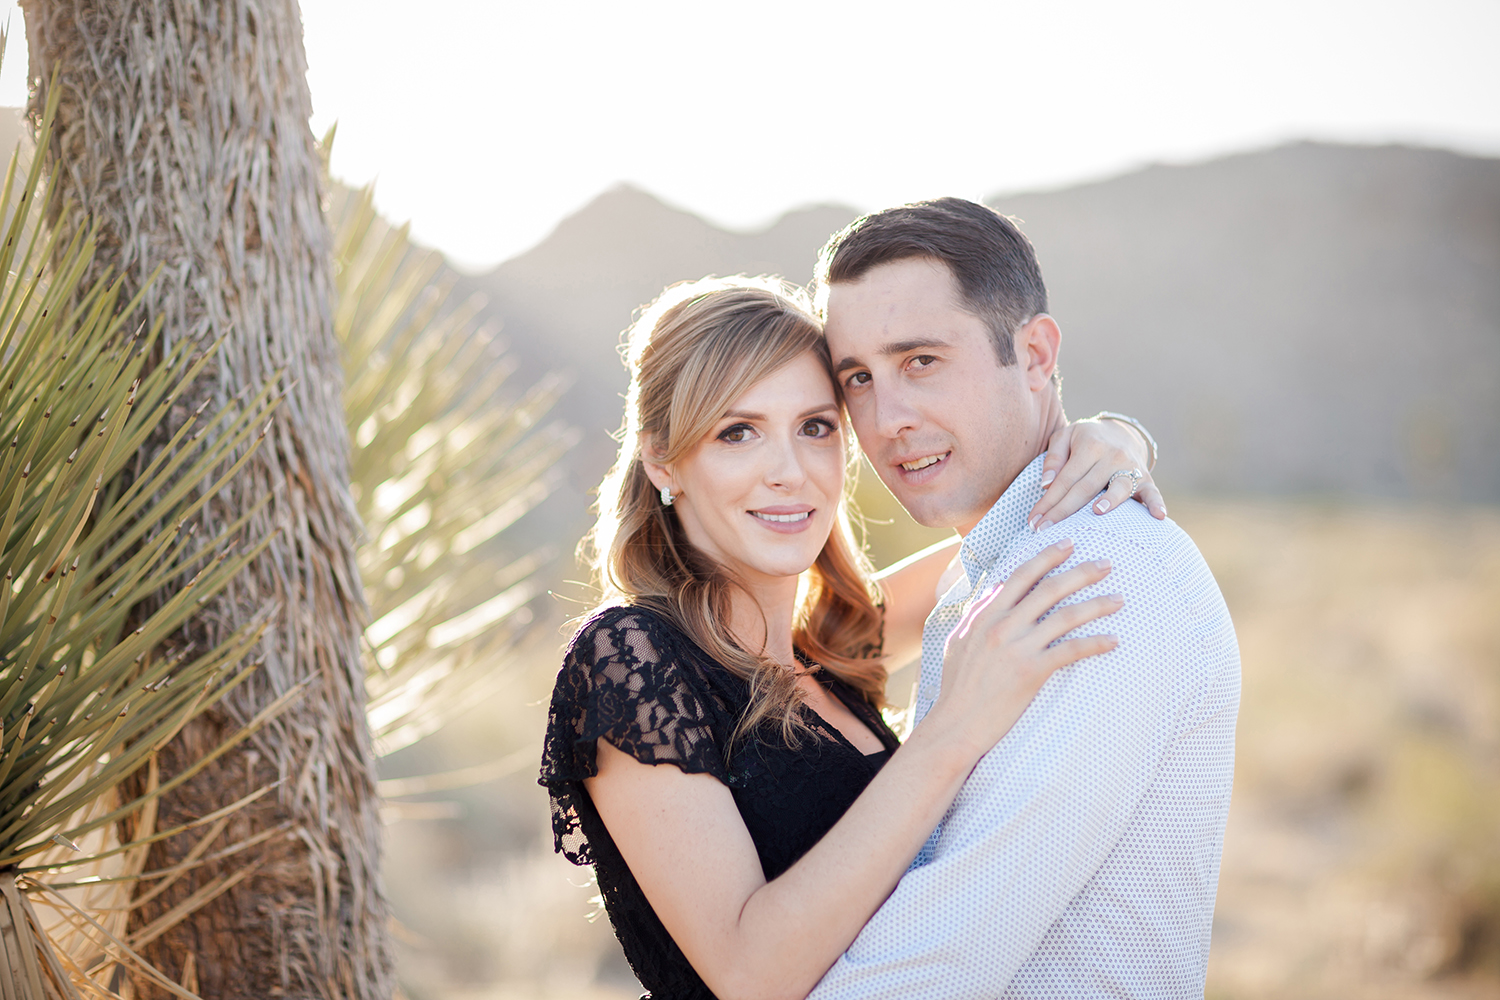 Engagement, Wedding & Family Photographer